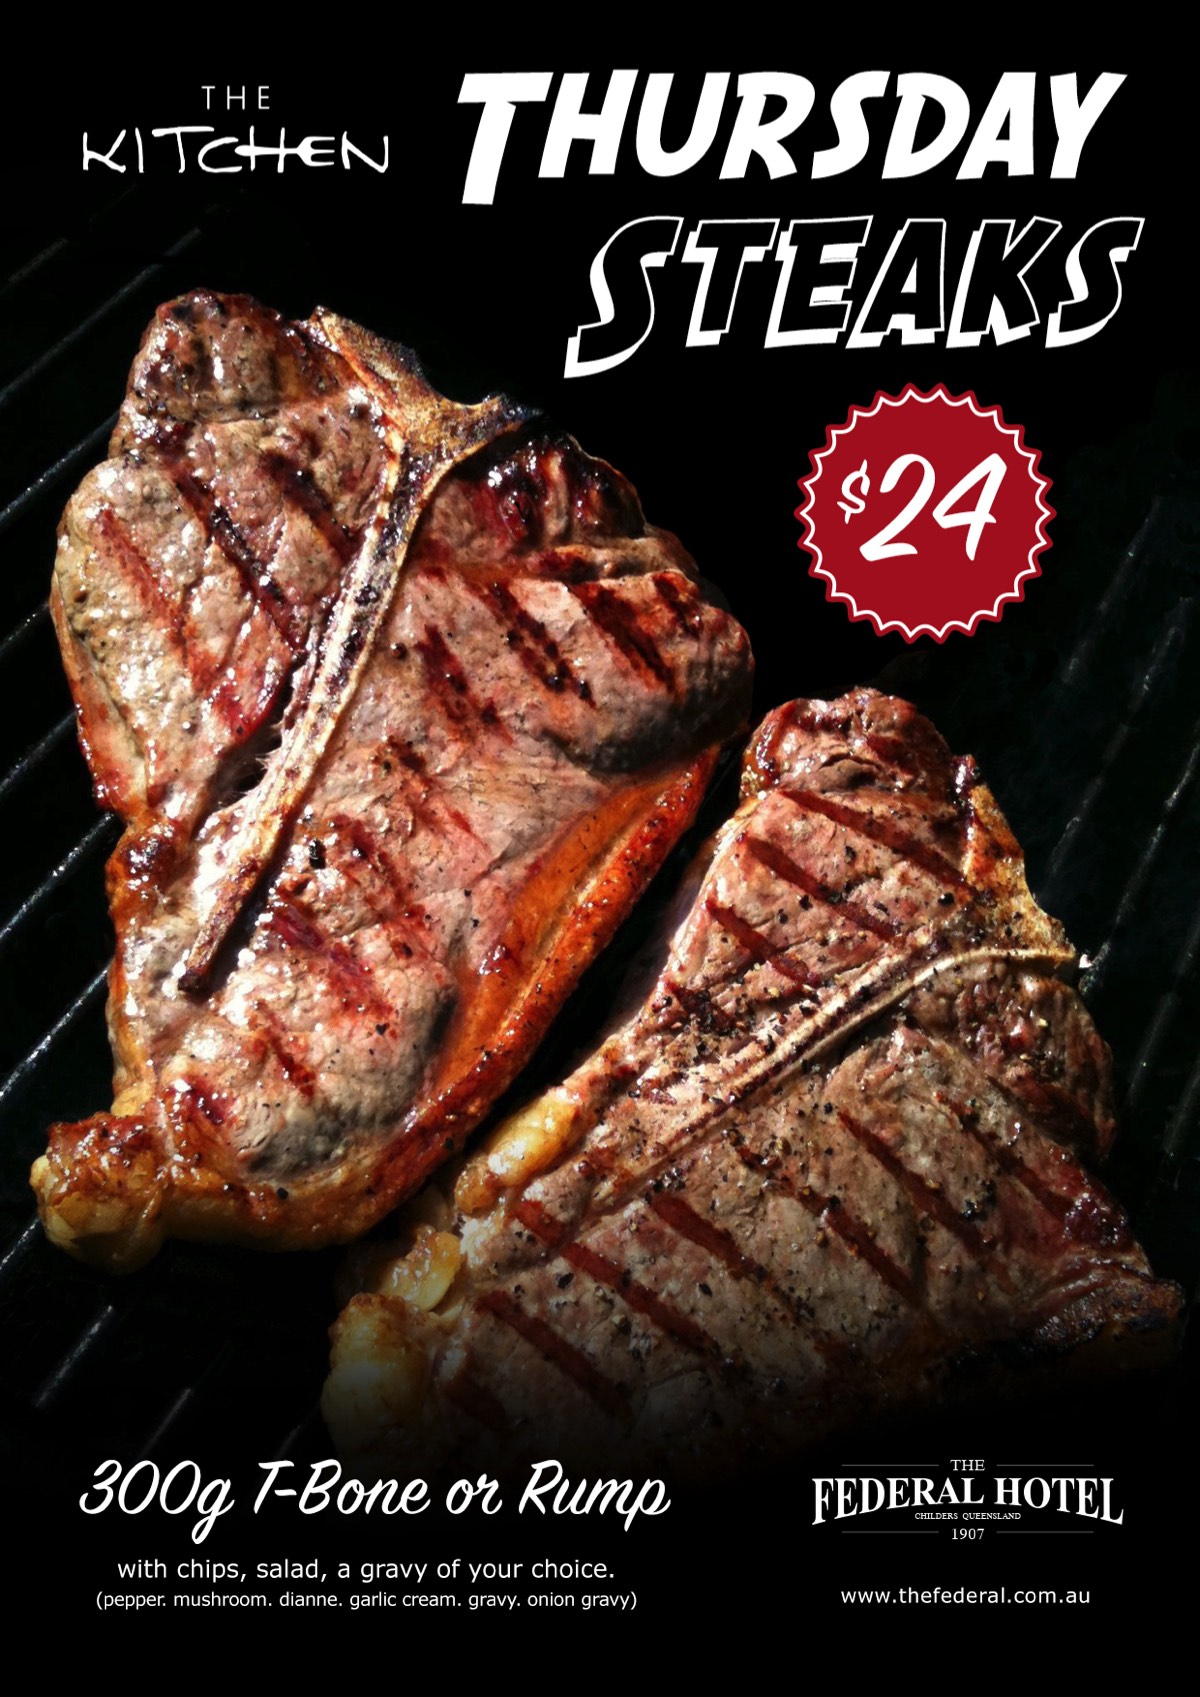 Thursday - Steaks $24